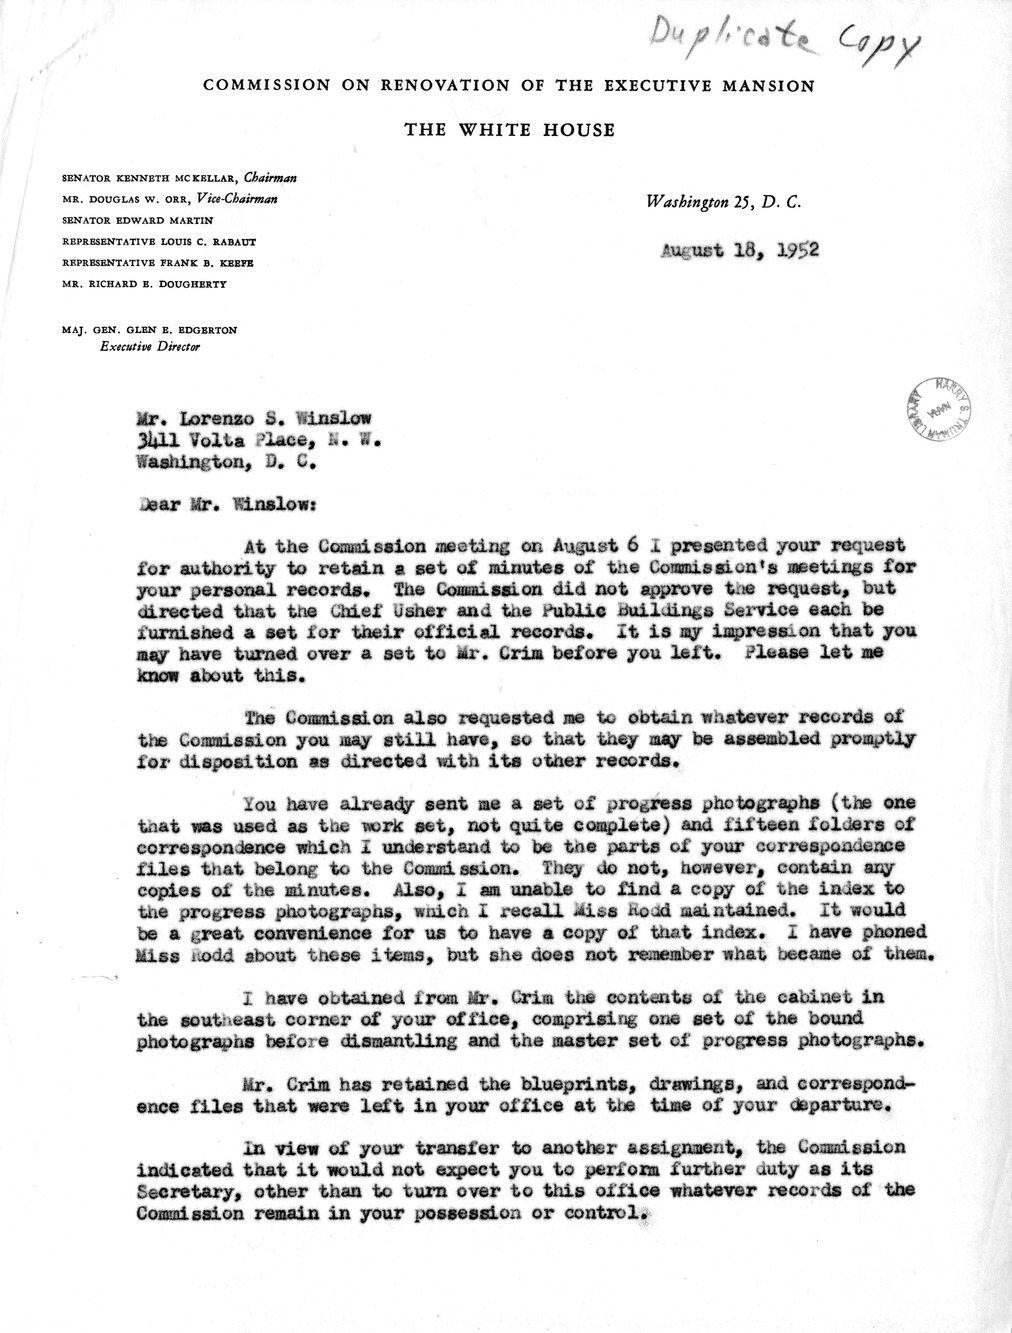 Letter from Major General Glen E. Edgerton to Lorenzo Winslow